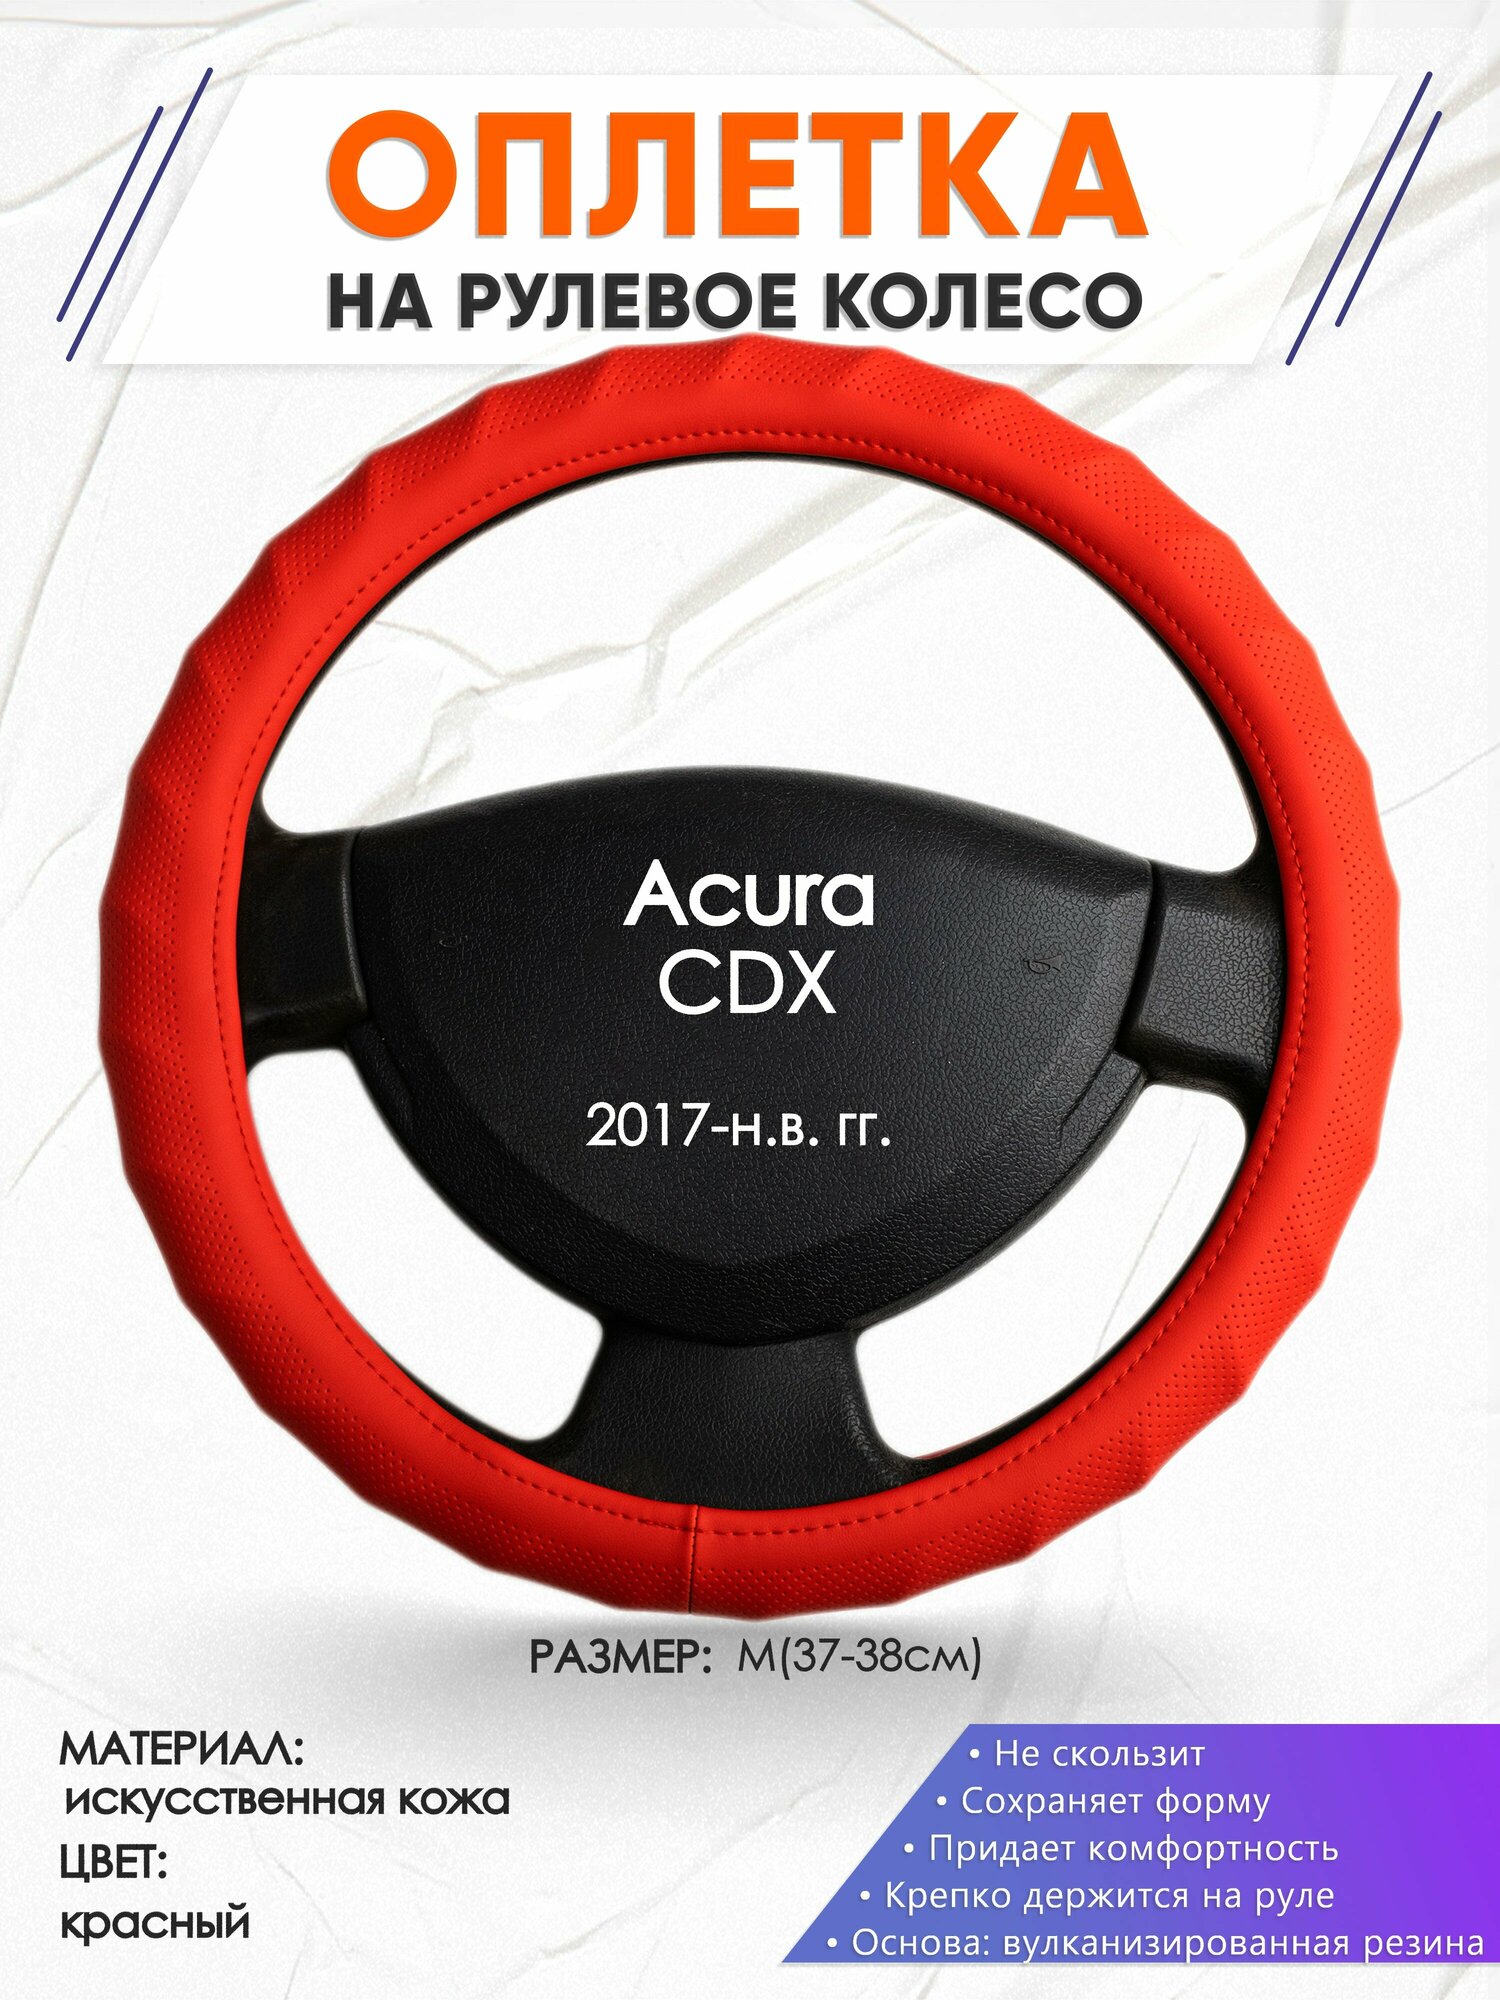 Оплетка наруль для Acura CDX(Акура СДХ) 2017-н.в. годов выпуска, размер M(37-38см), Искусственная кожа 73